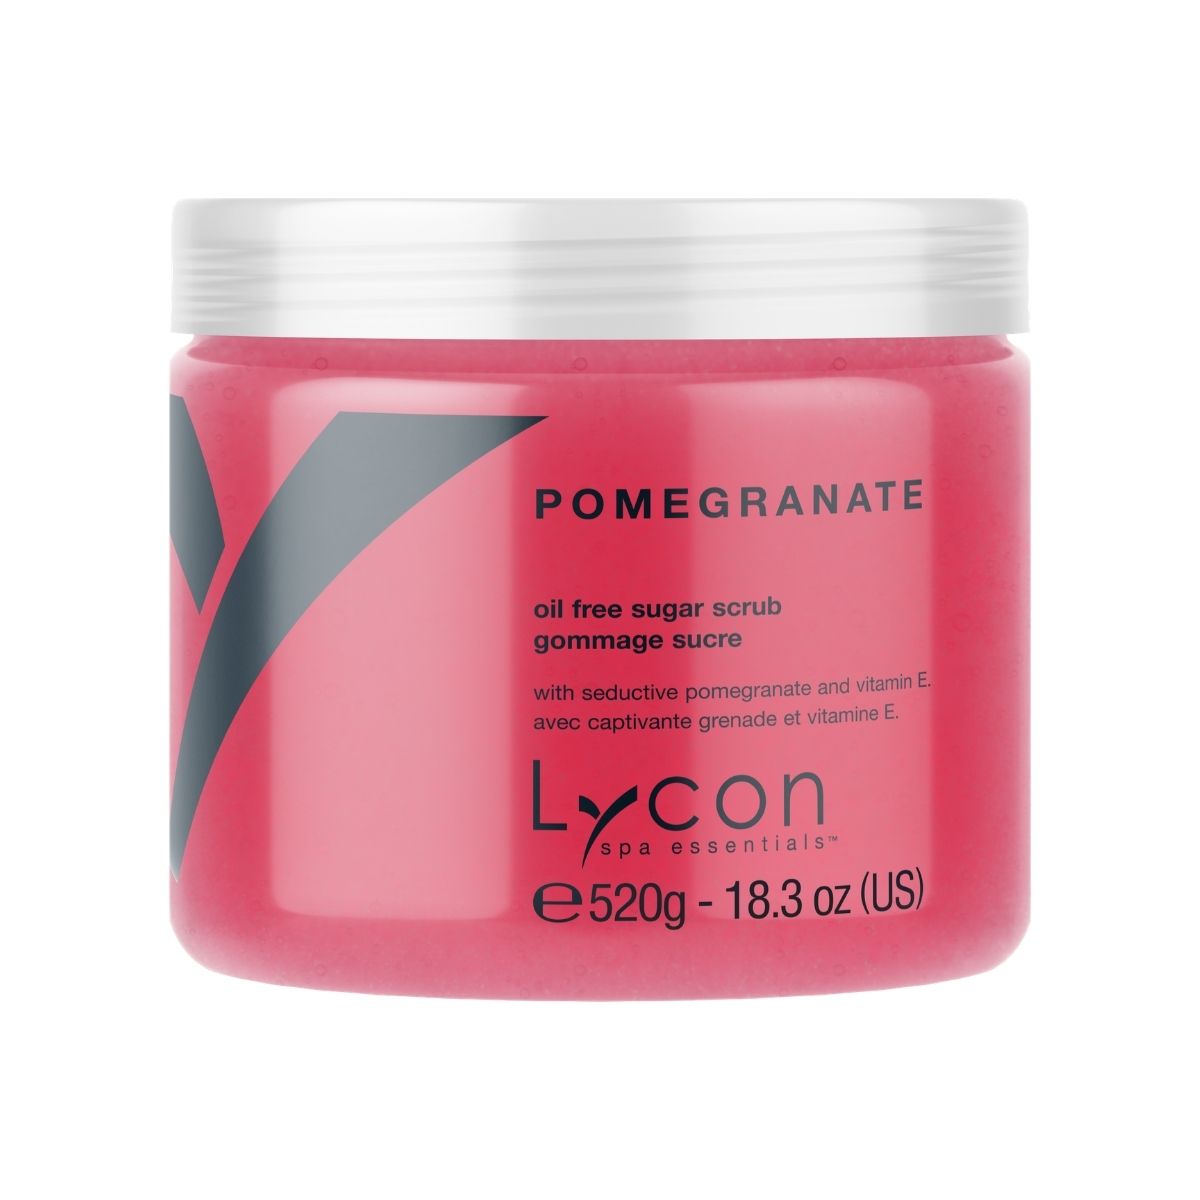 Lycon Pomegranate Oil Free Sugar Scrub